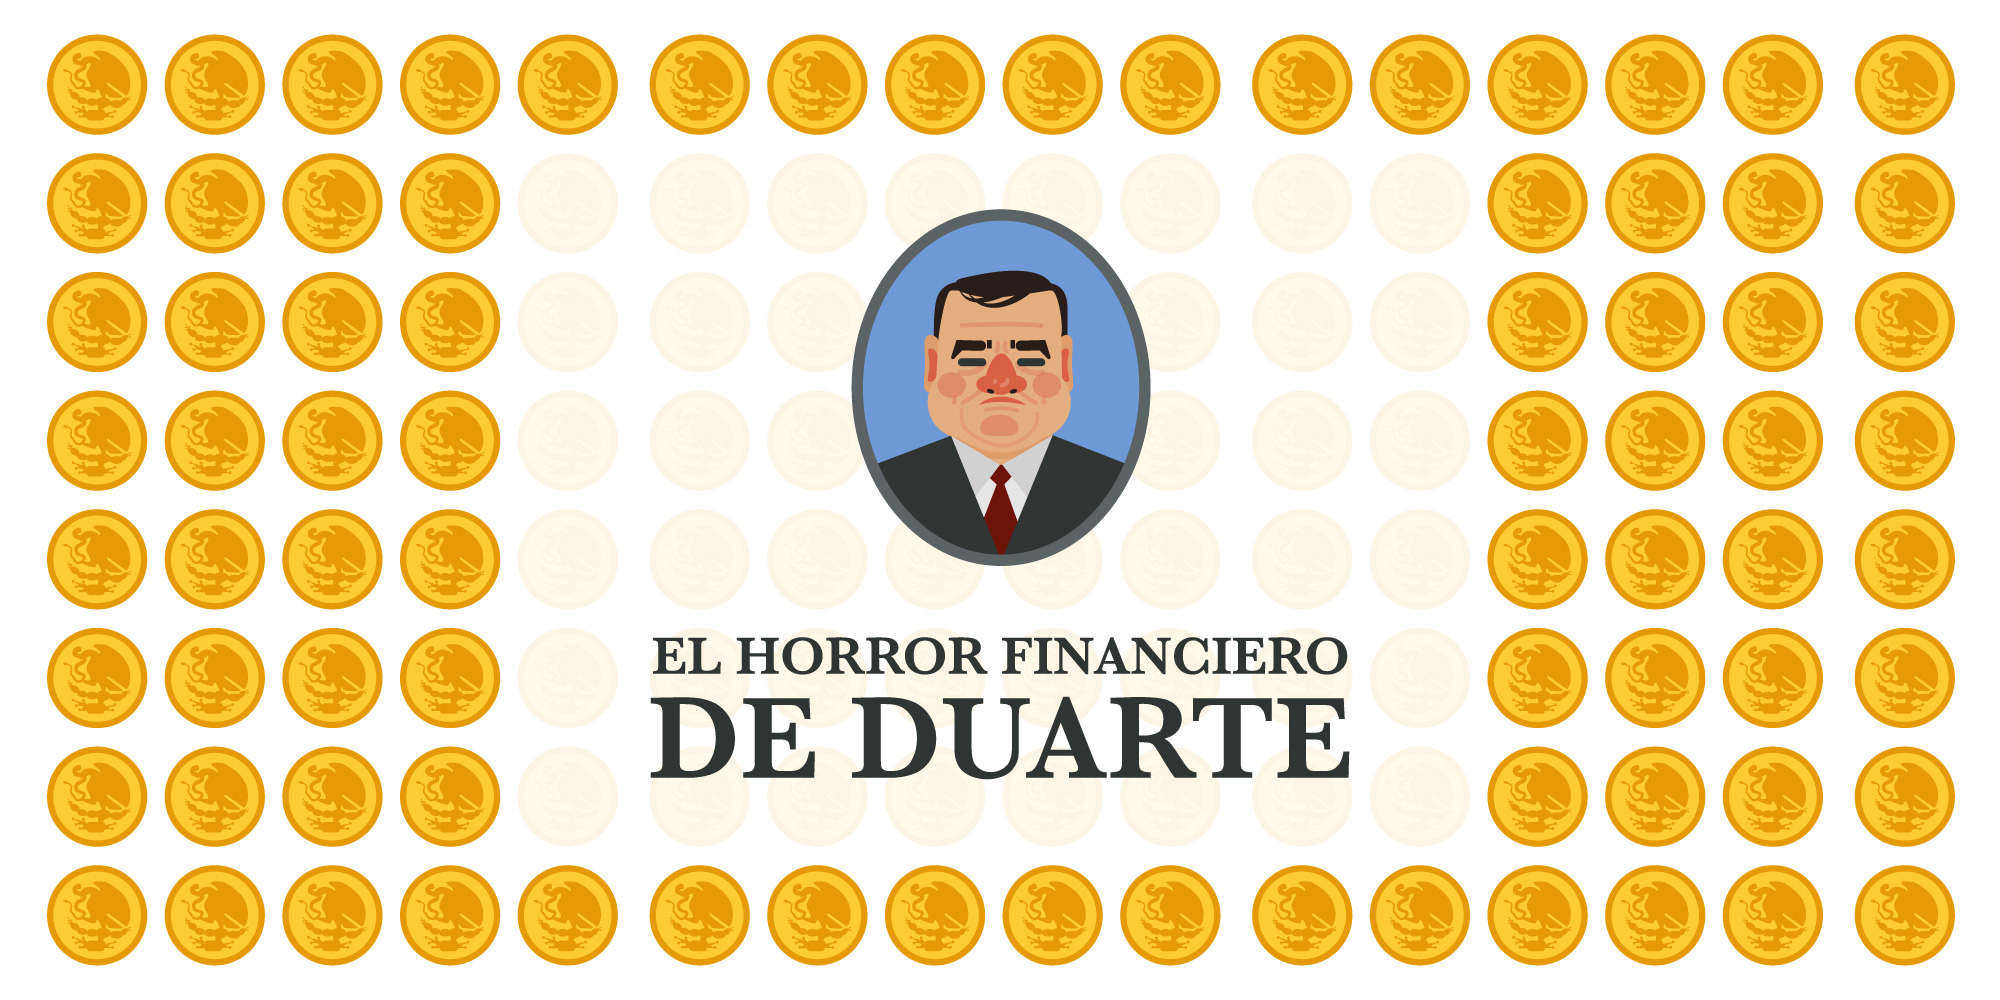 Esta gráfica demuestra el horror financiero de Duarte